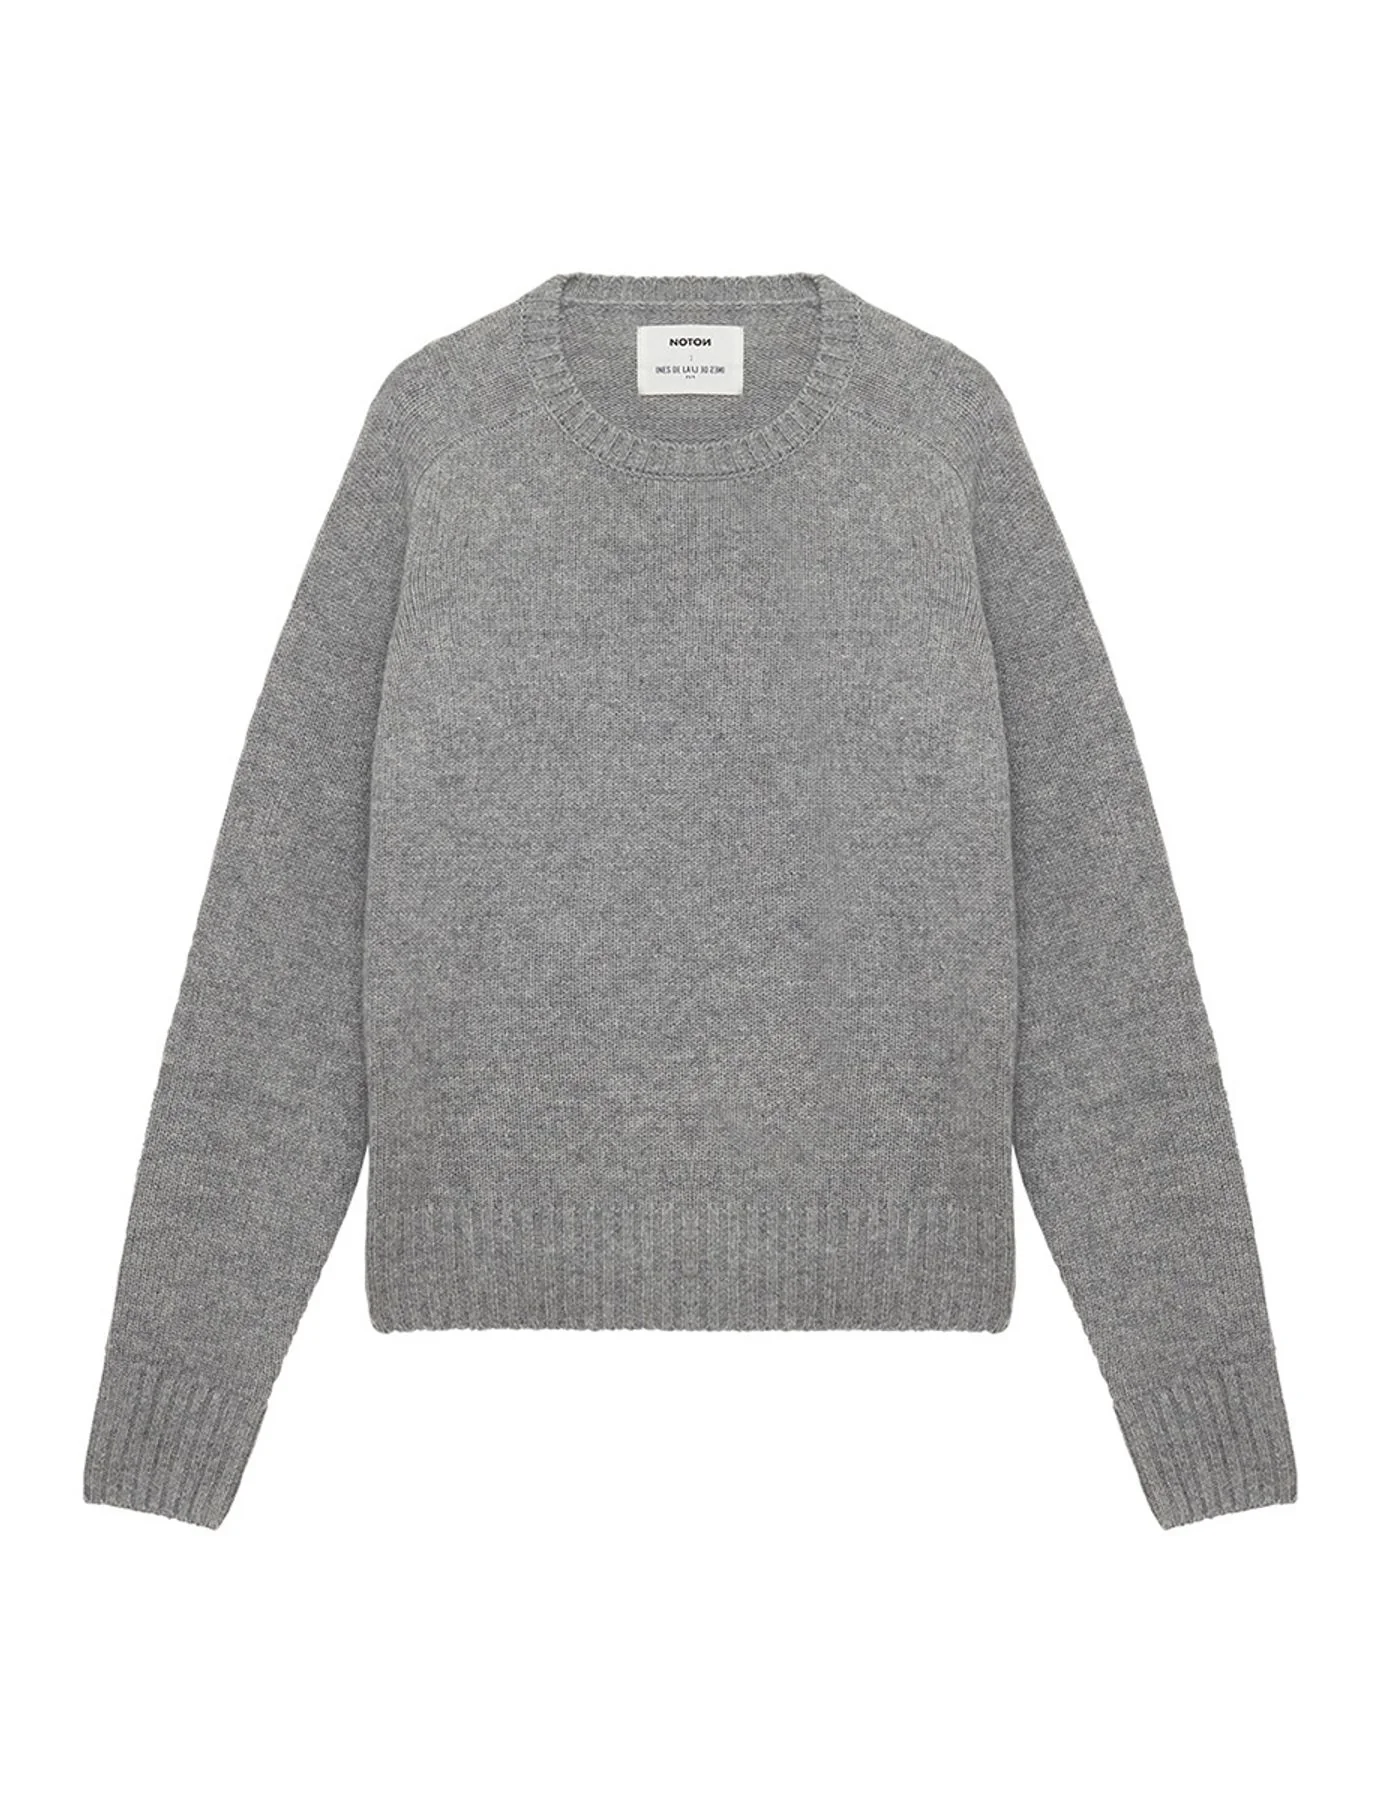 sweater-cashmere-gray-round-neck-hammer-sleeves-x-notshy